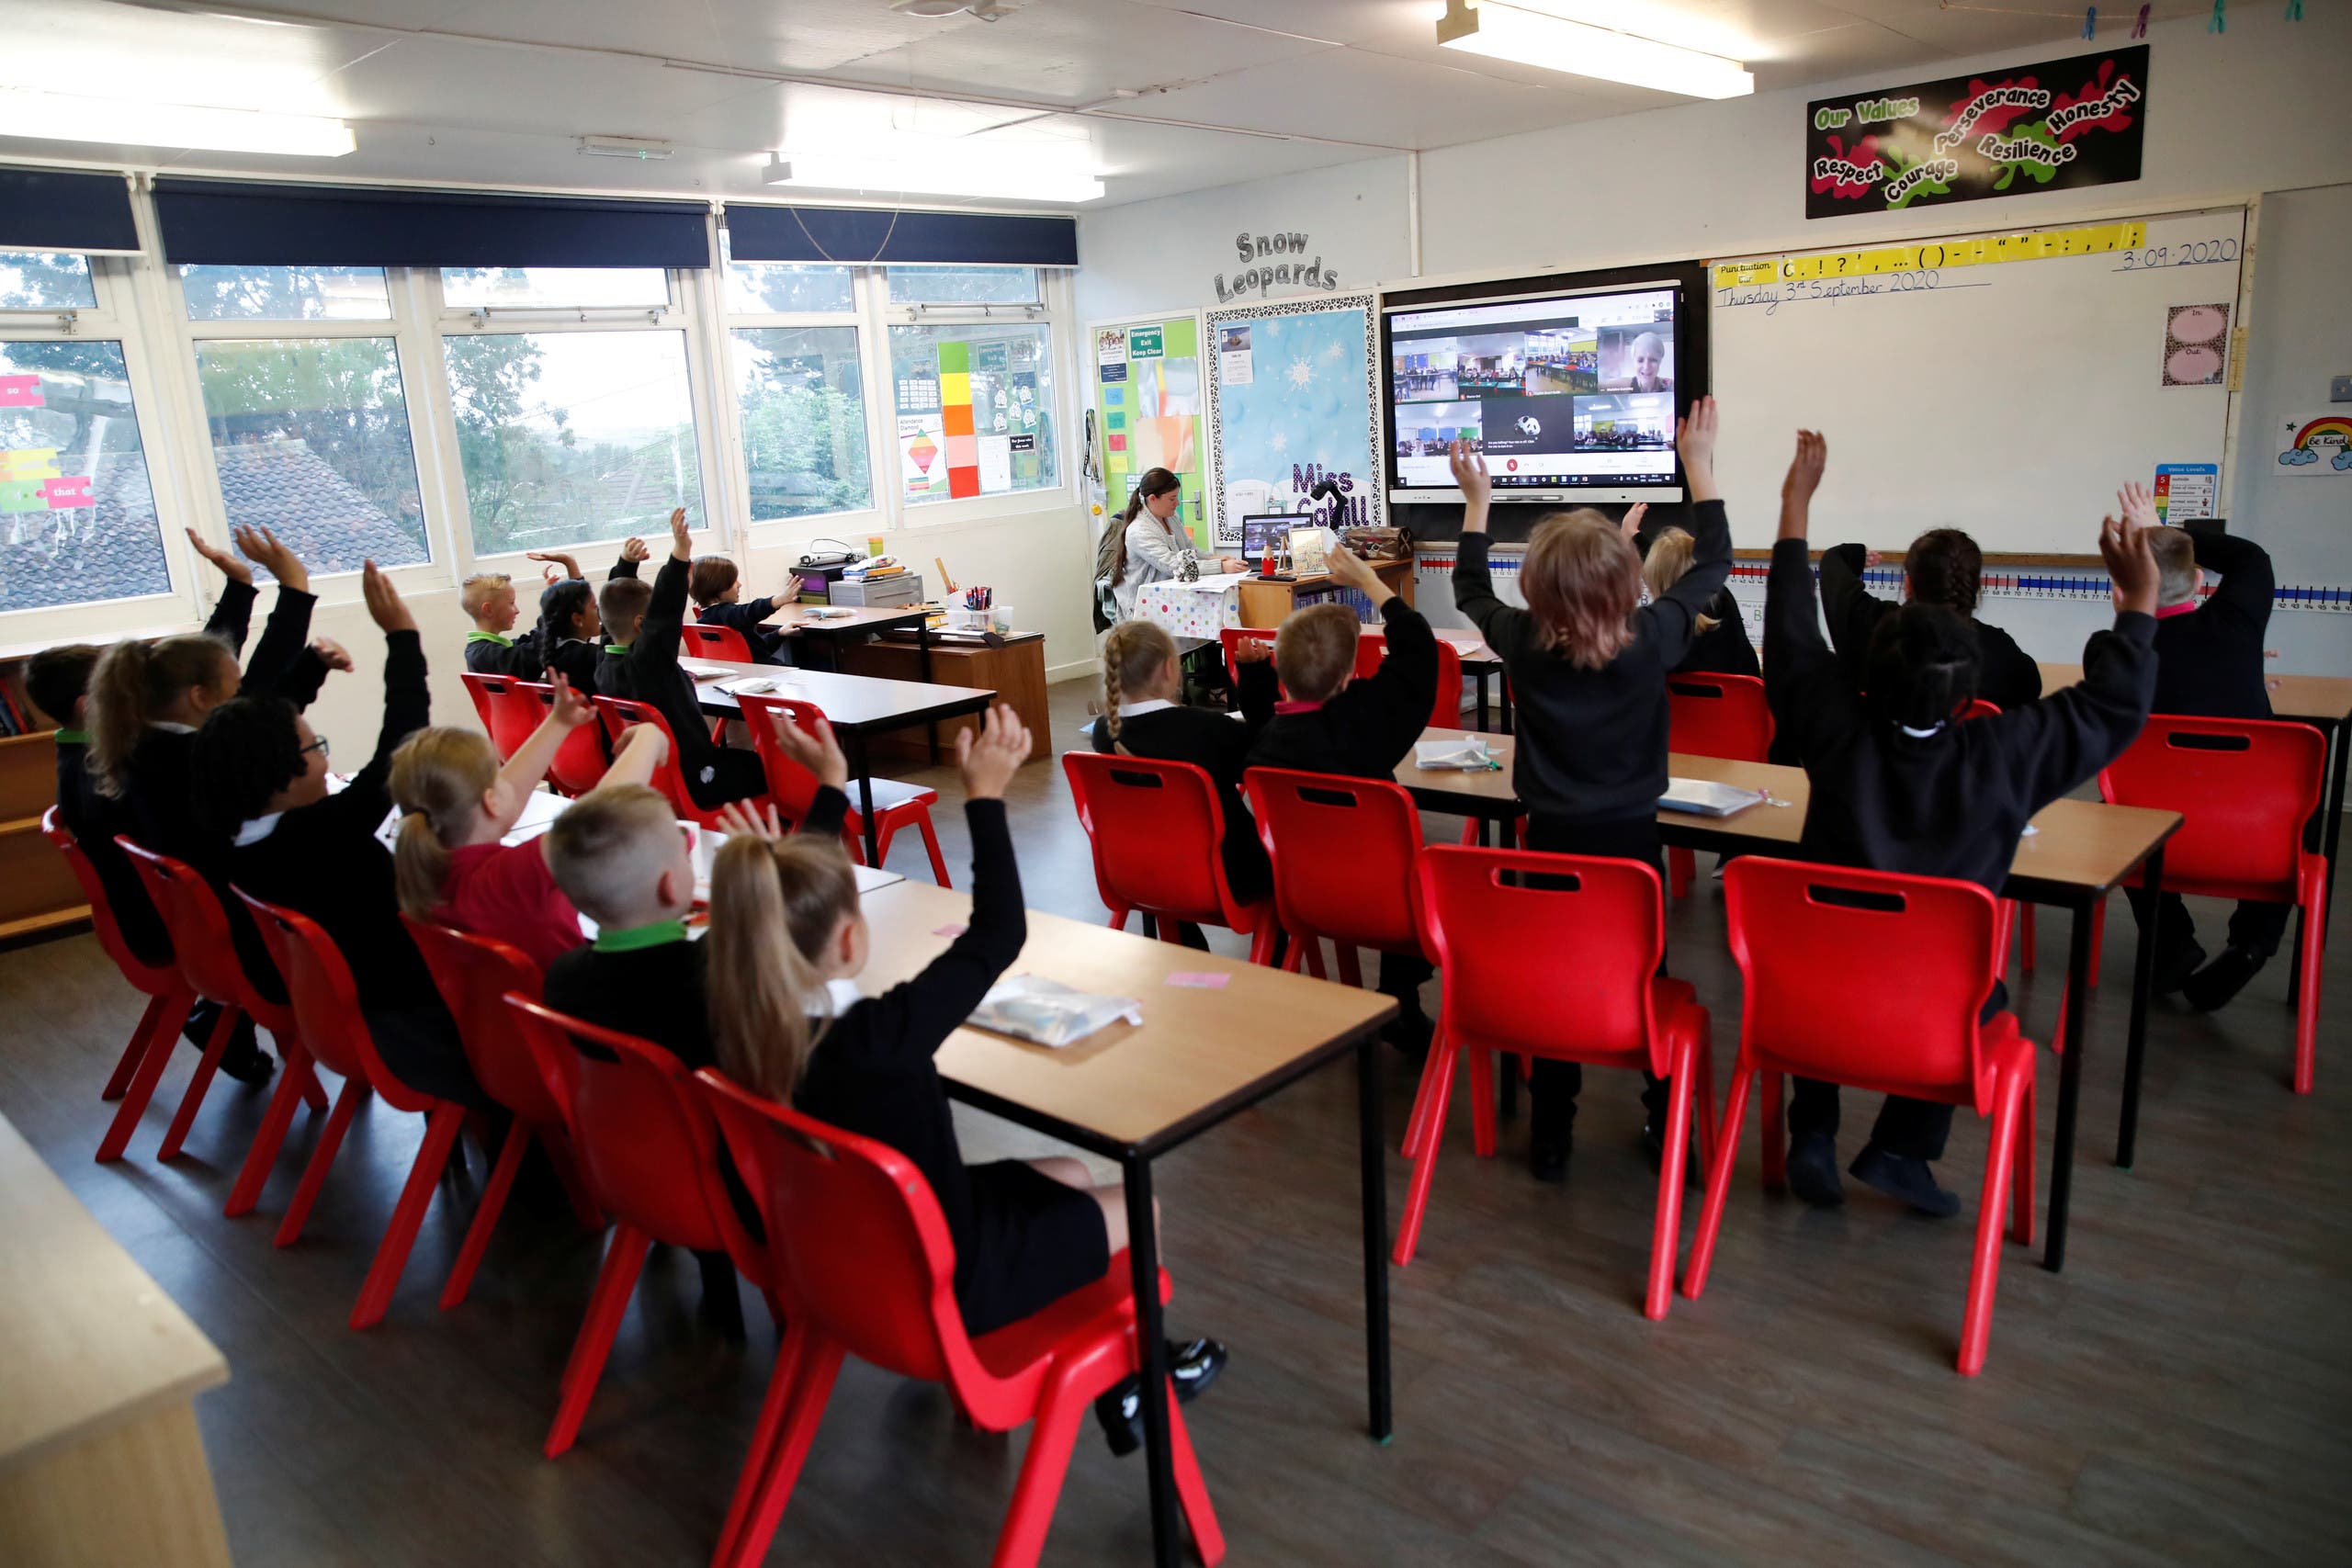 أطفال عادوا للدراسة في سبتمبر الماضي في إحدى مدارس بريطانيا